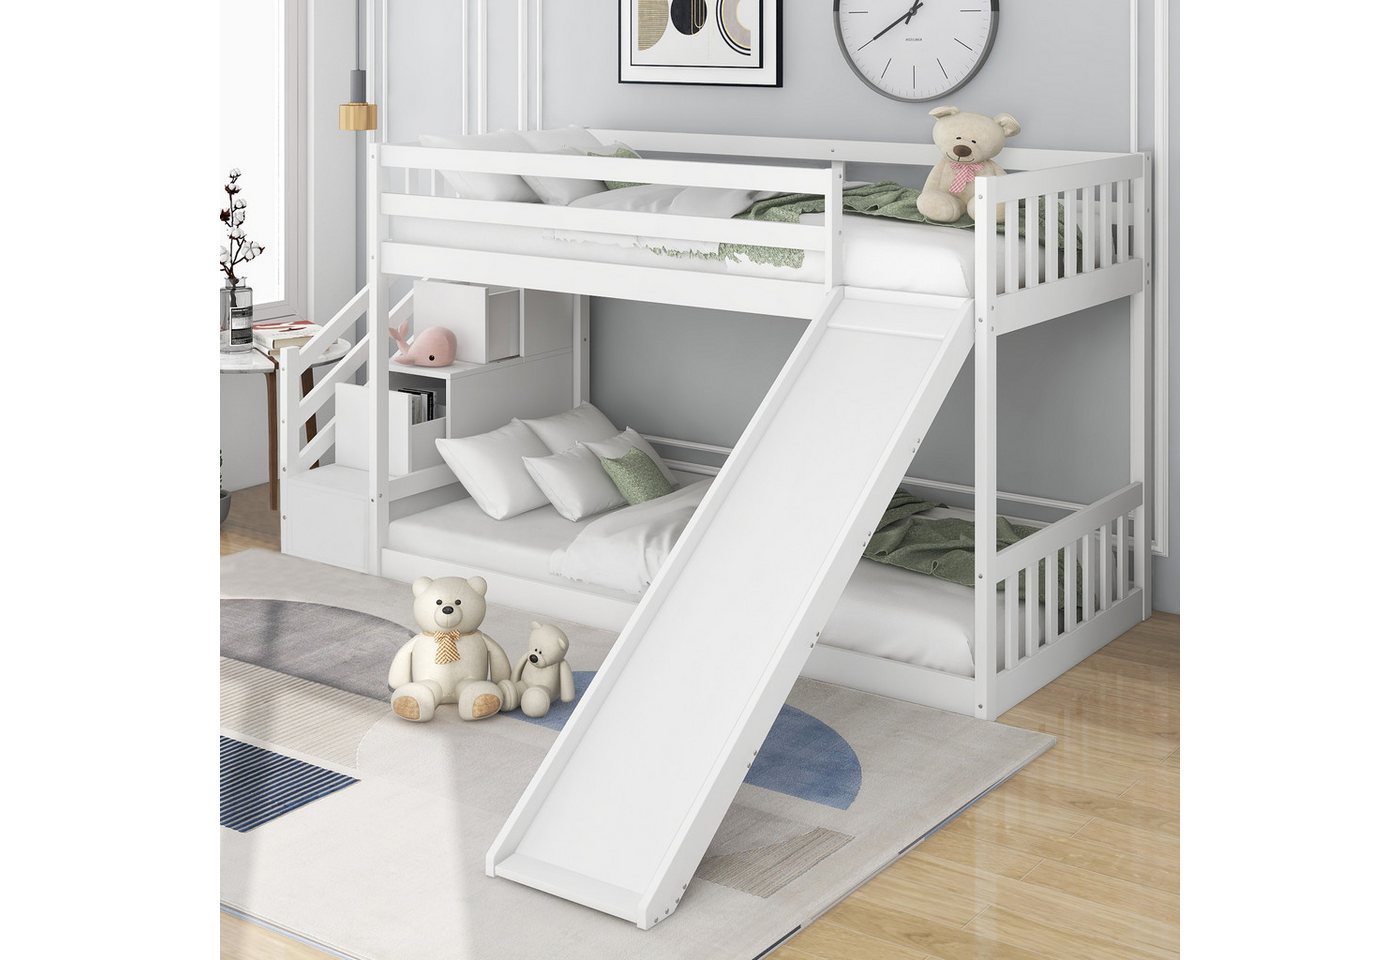 DOPWii Kinderbett 90x200cm,Etagenbett mit Rutsche,Treppe,mit 2 Schubladen in der Treppe,Rahmen aus massivem Kiefernholz,Kinderbett,Weiß von DOPWii